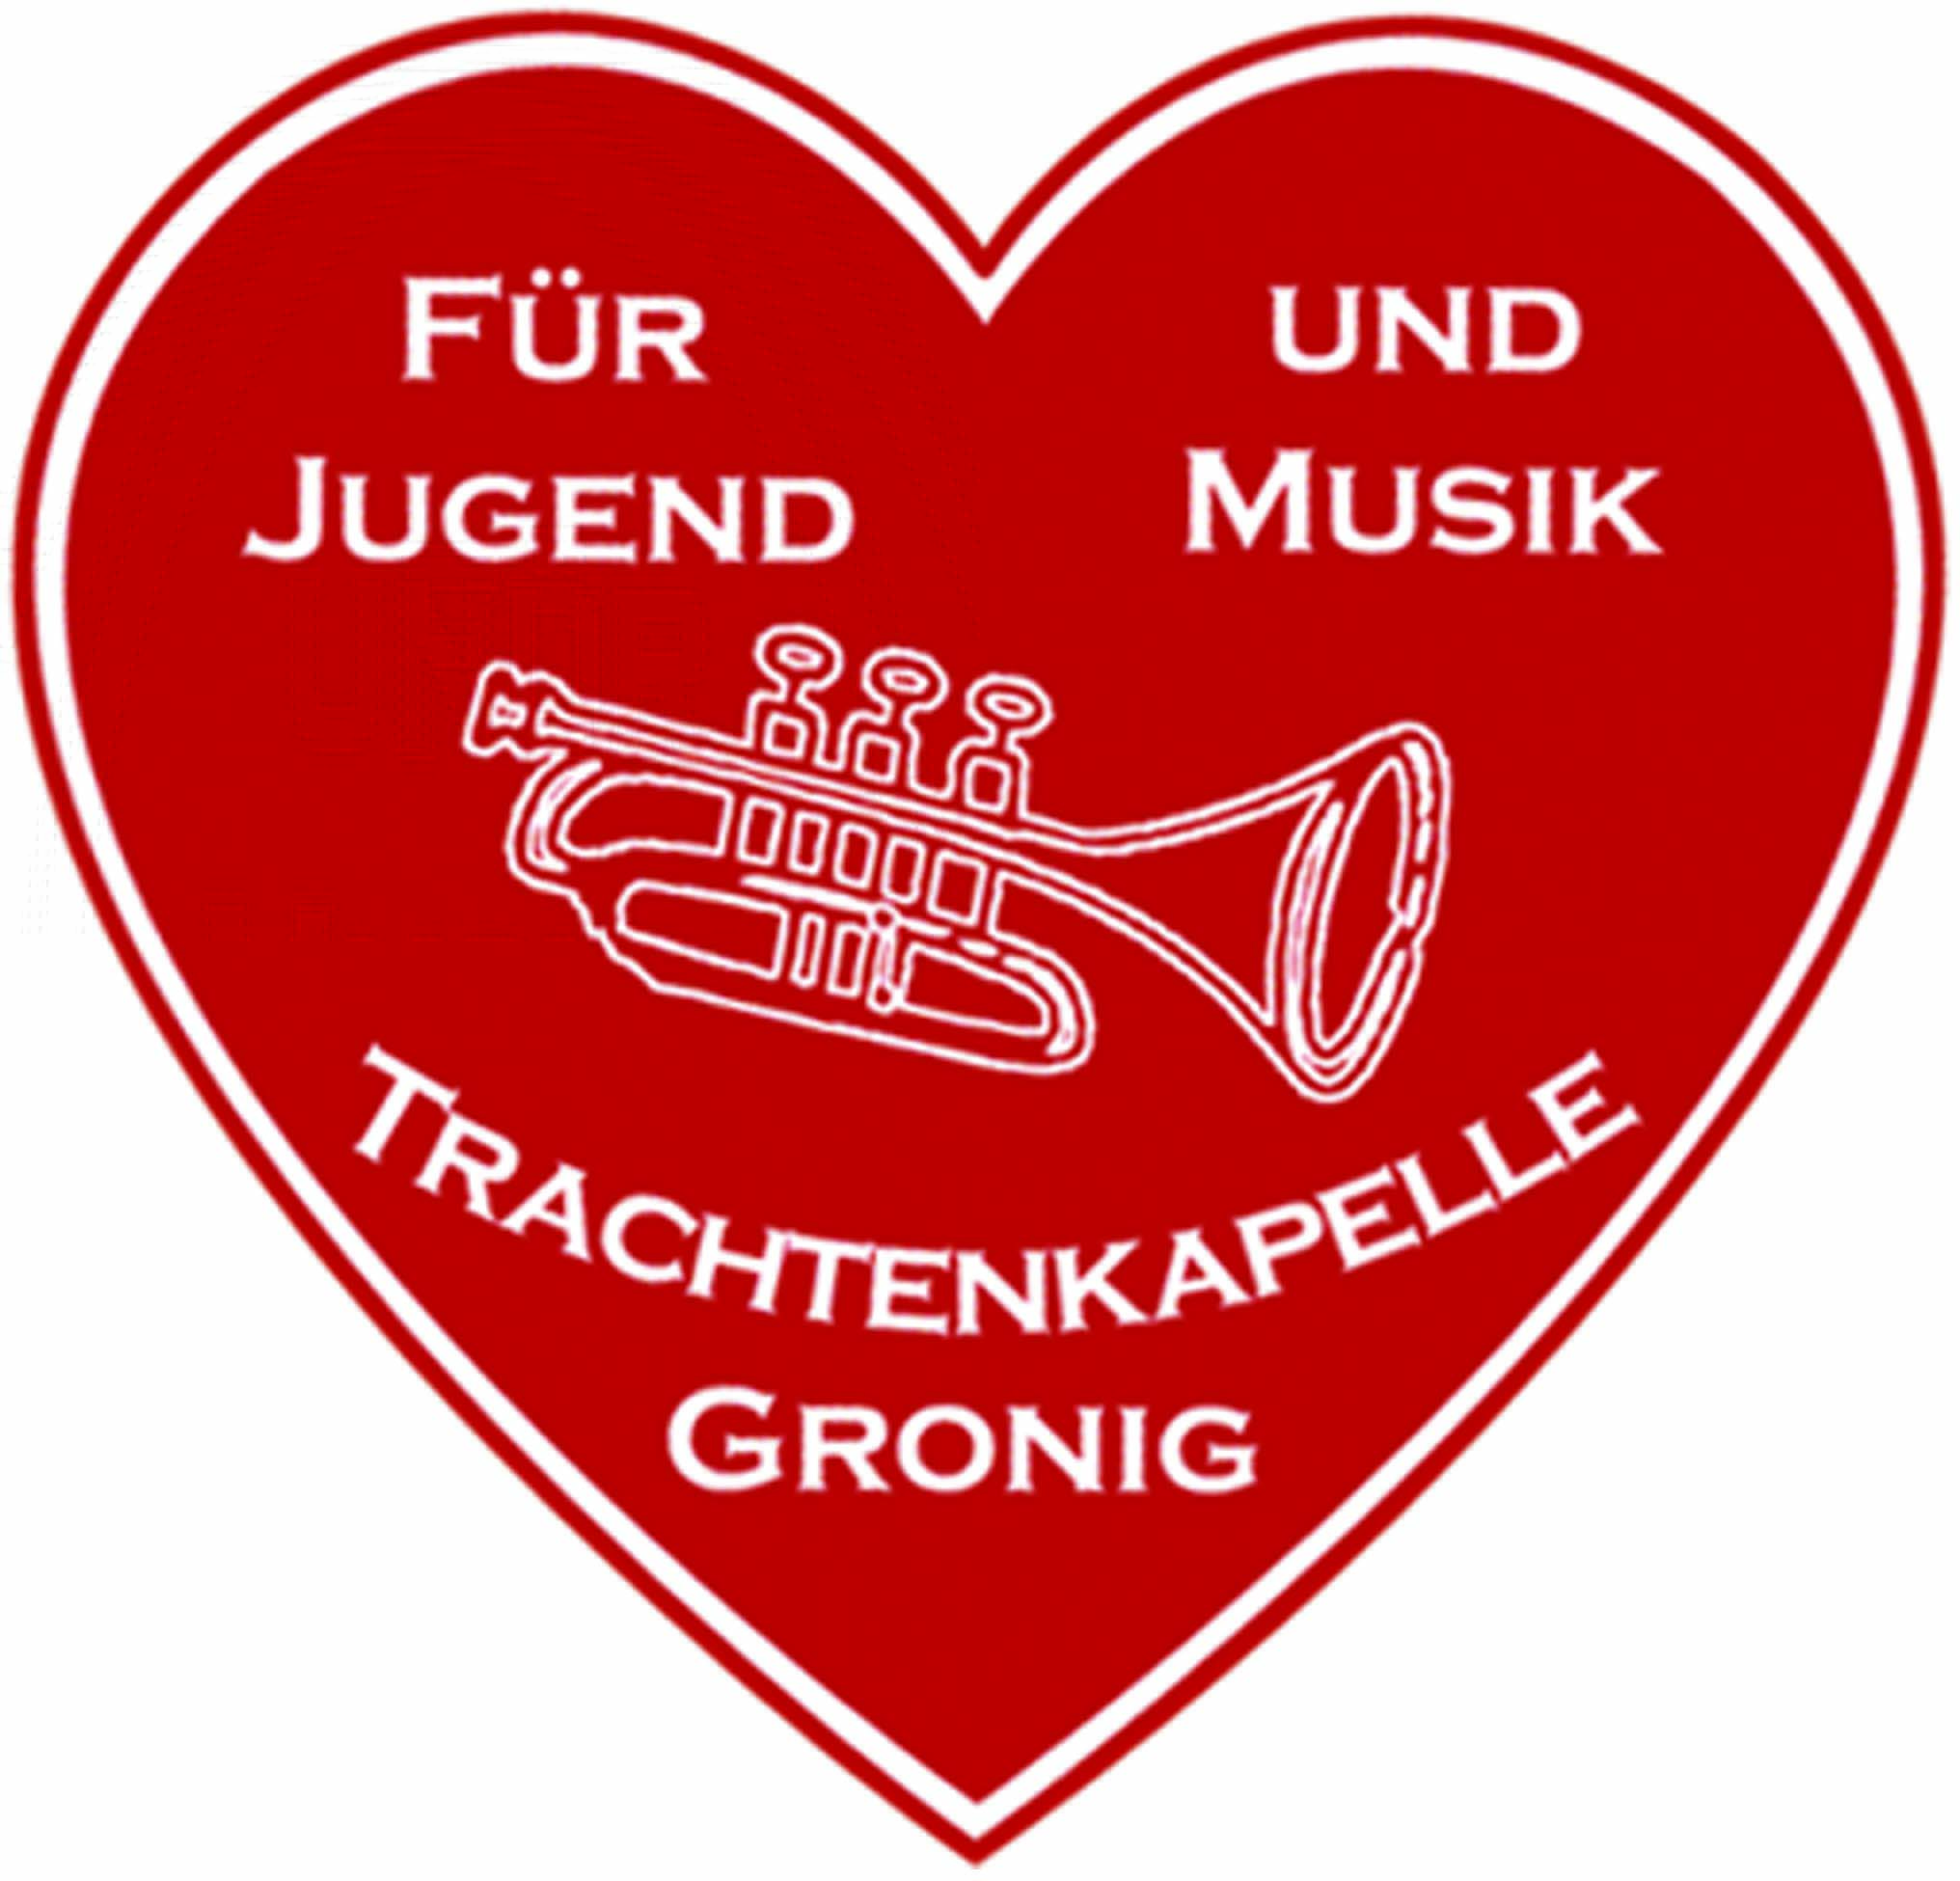 Profilbild des Vereins Musikverein "Harmonie" Gronig e.V.